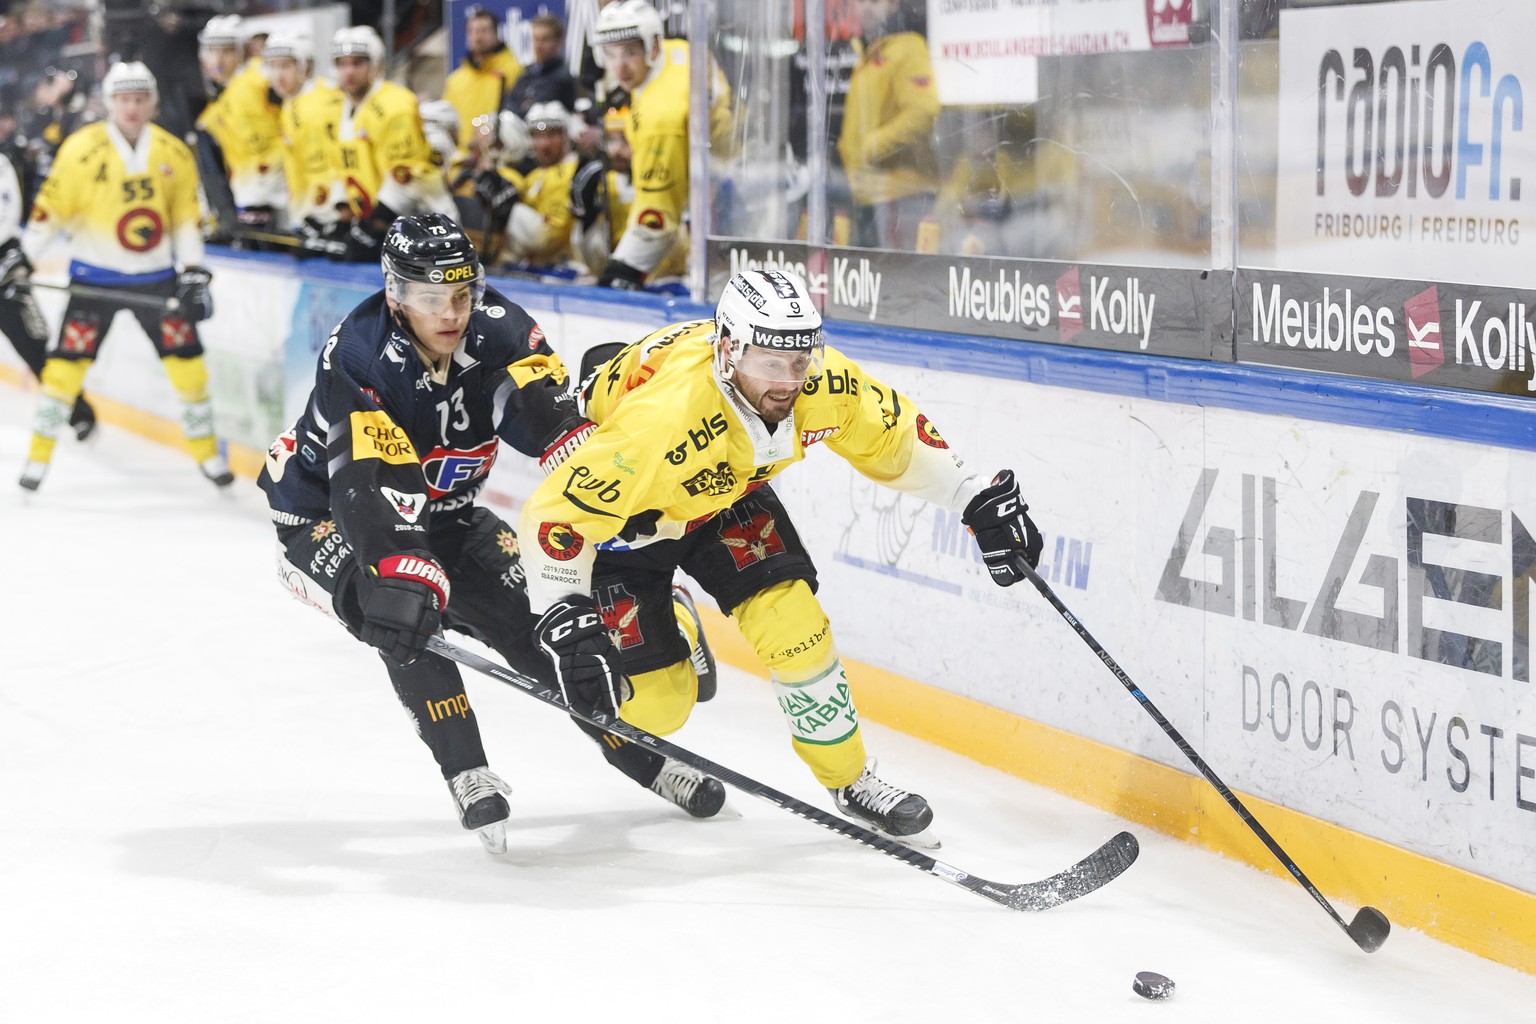 L&#039;attaquant fribourgeois Sandro Schmid, gauche, lutte pour le puck avec l&#039;attaquant bernois Jan Mursak, droite, lors de la rencontre du championnat suisse de hockey sur glace de National Lea ...